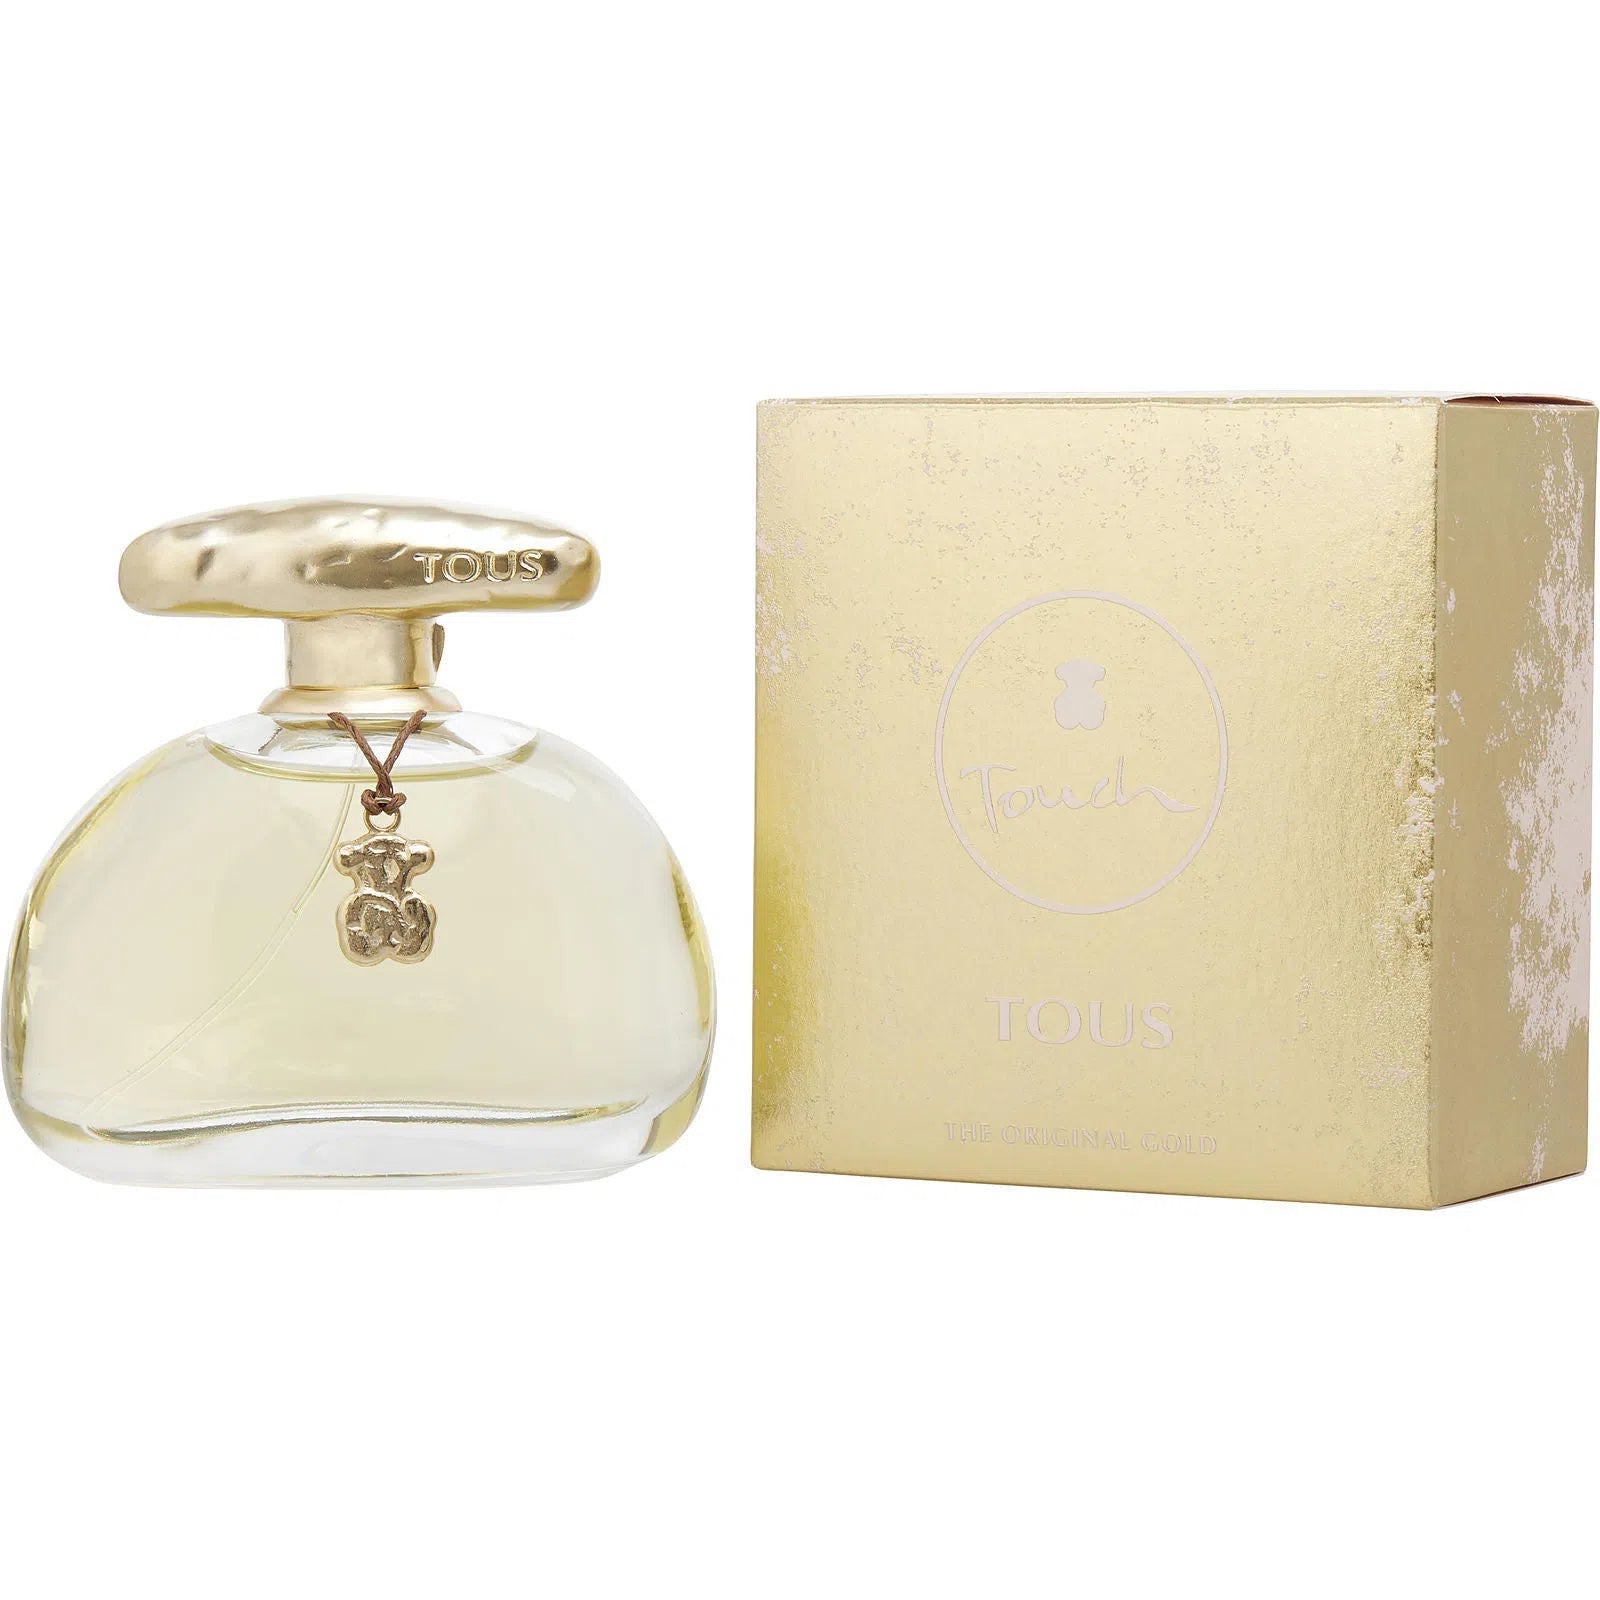 Perfume Tous Touch The Original Gold EDT (W) / 100 ml - 8437006654296- Prive Perfumes Honduras